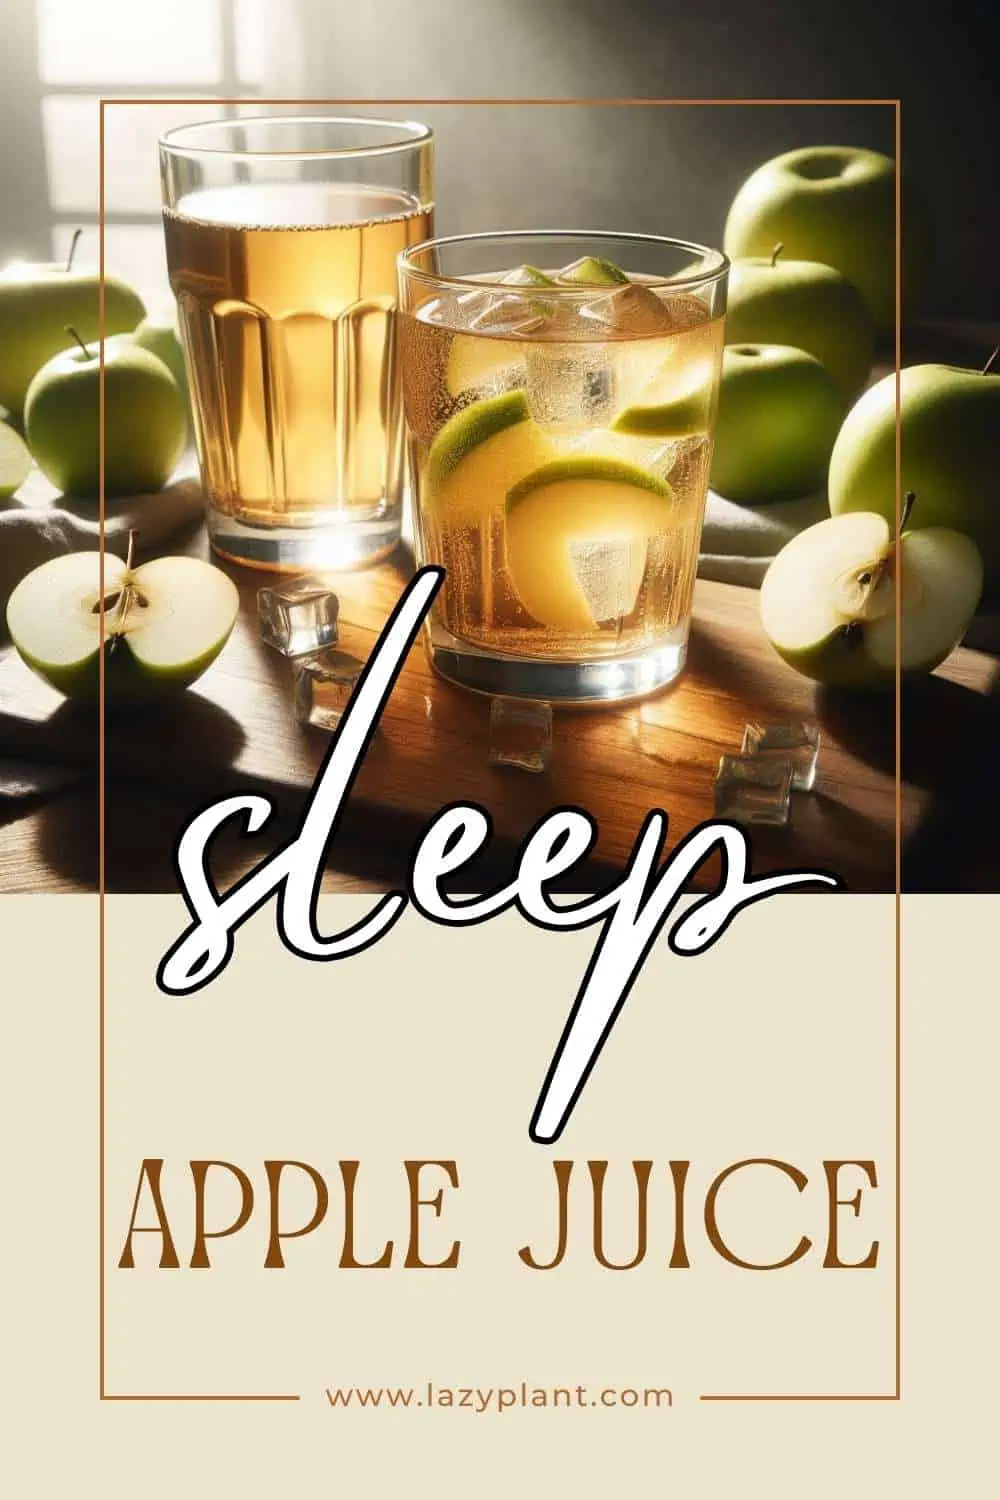 Benefits of Apple Juice for Sleep